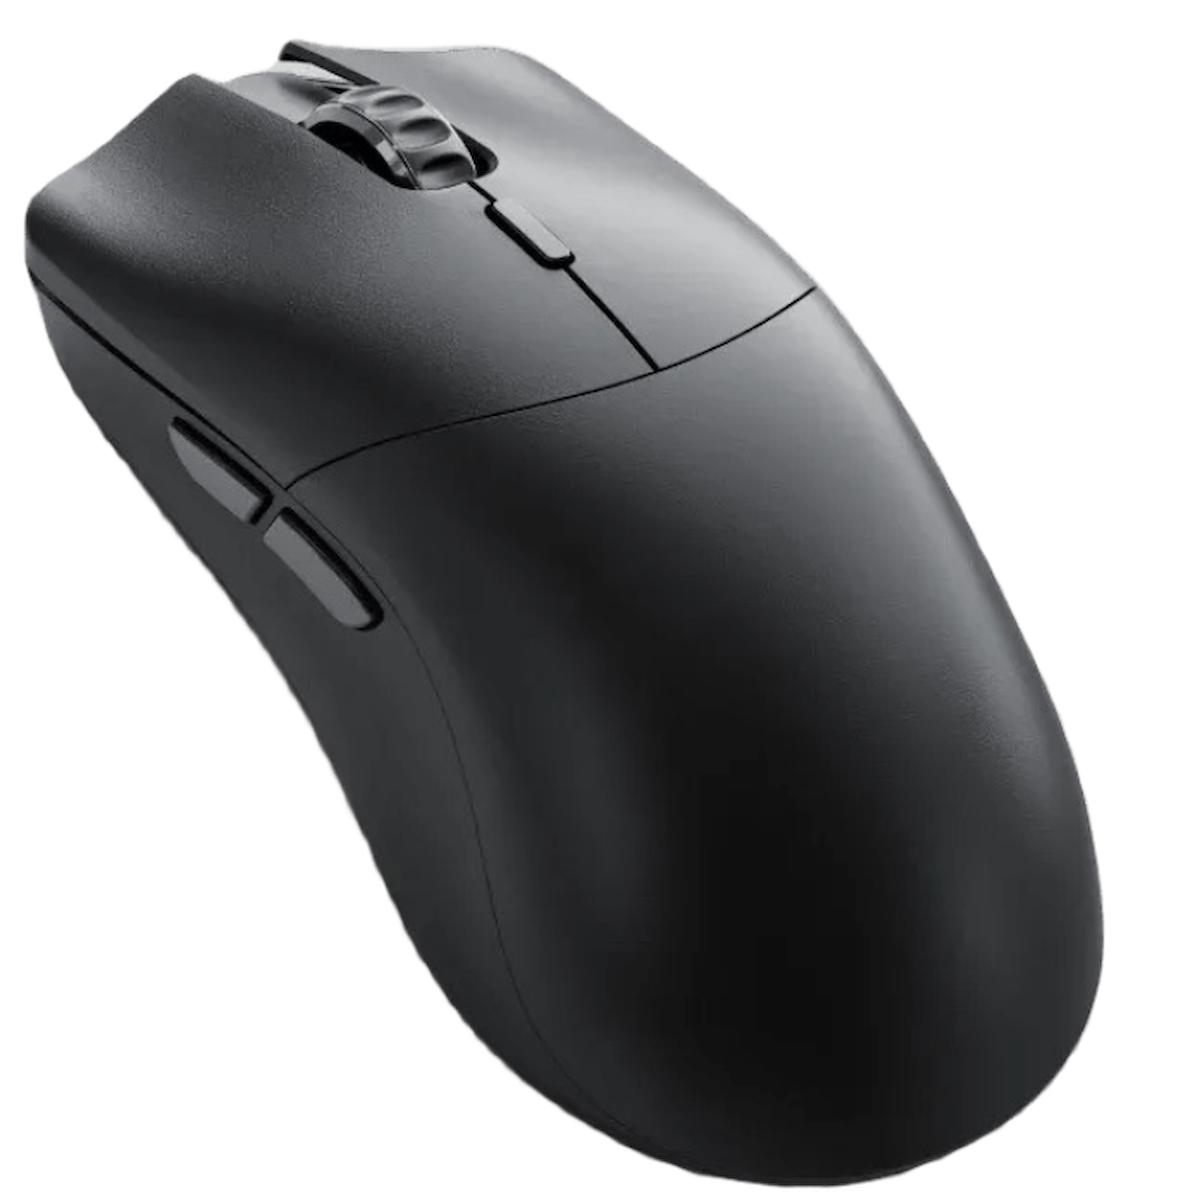 Glorious Model O 2 Pro Kablosuz Siyah Optik Gaming Mouse